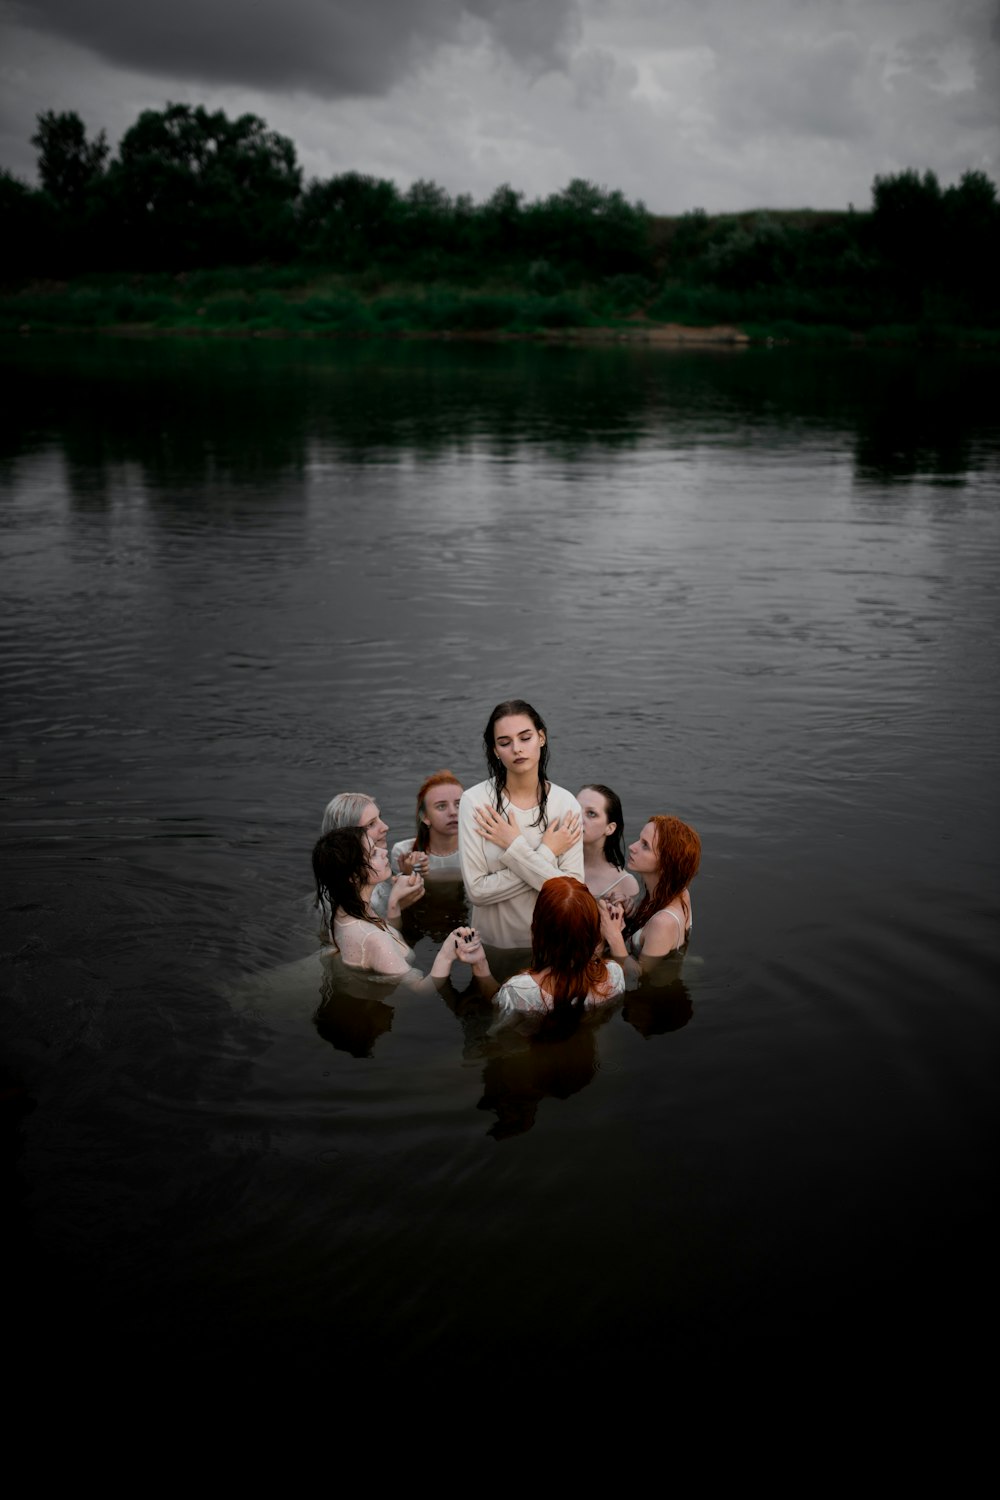 Familia de 4 sentados en el agua durante el día